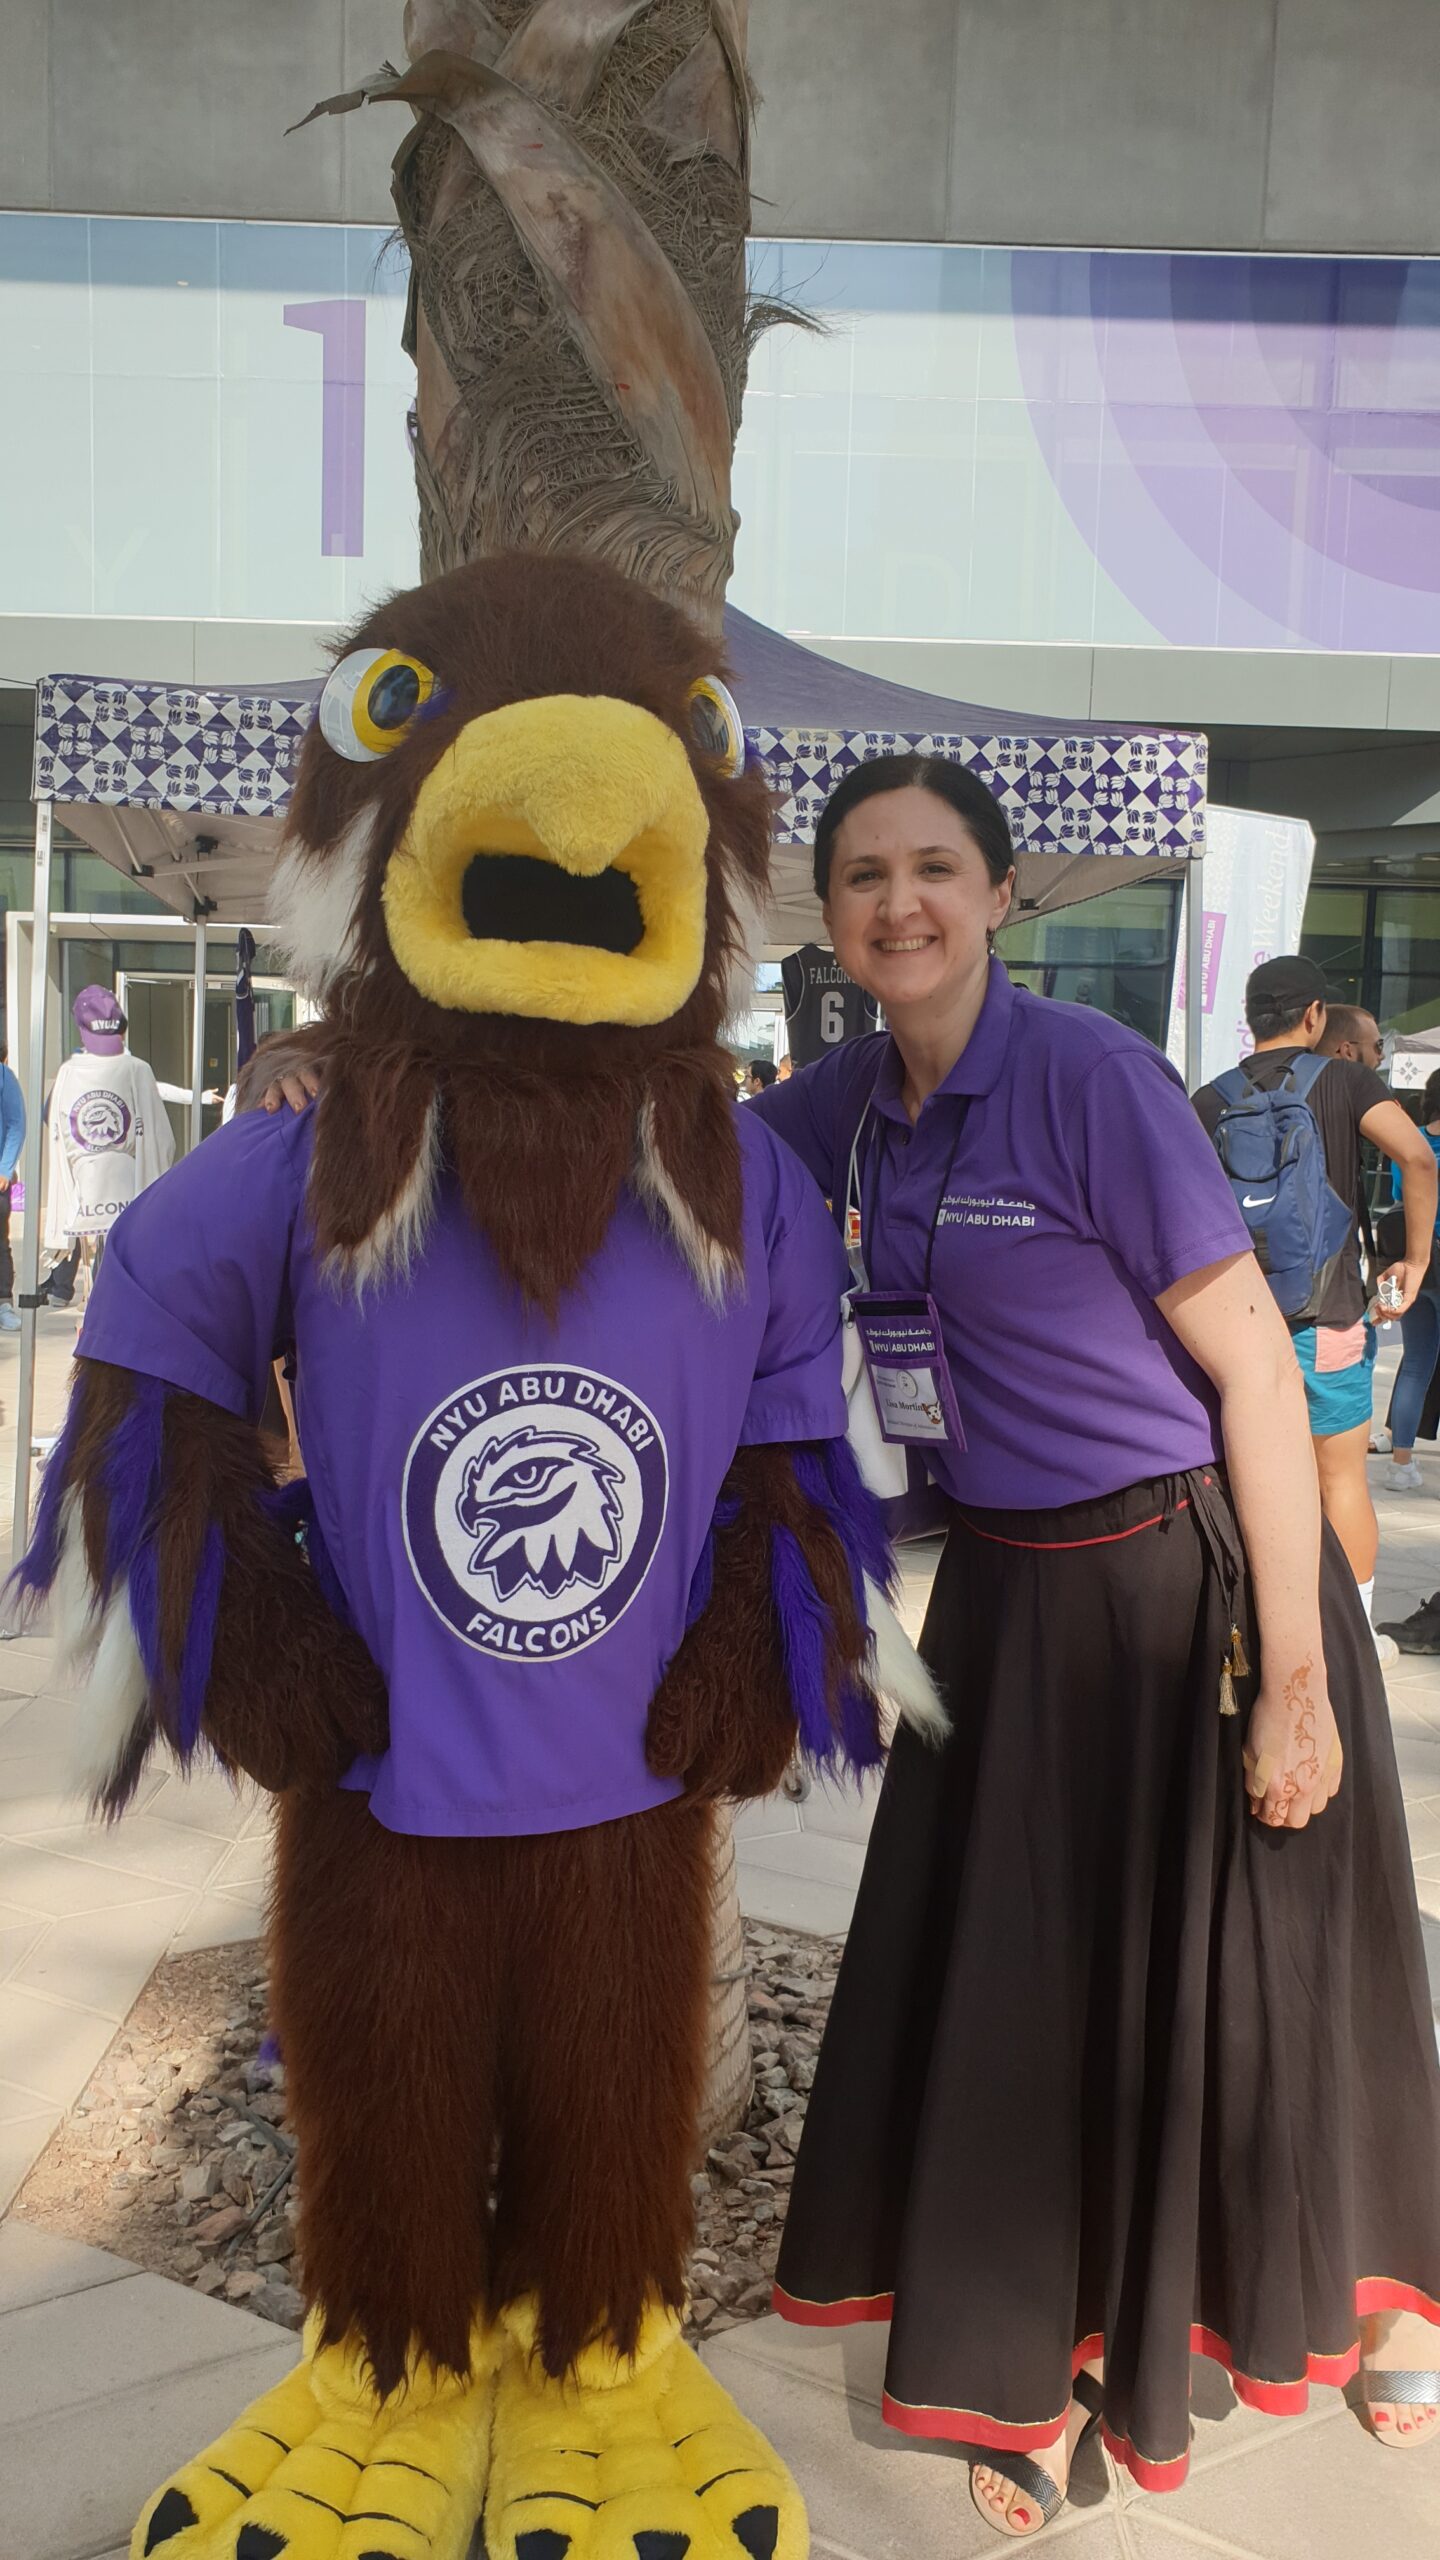 NYU Abu Dhabi’s mascot, Faiza the Falcon, and the author.